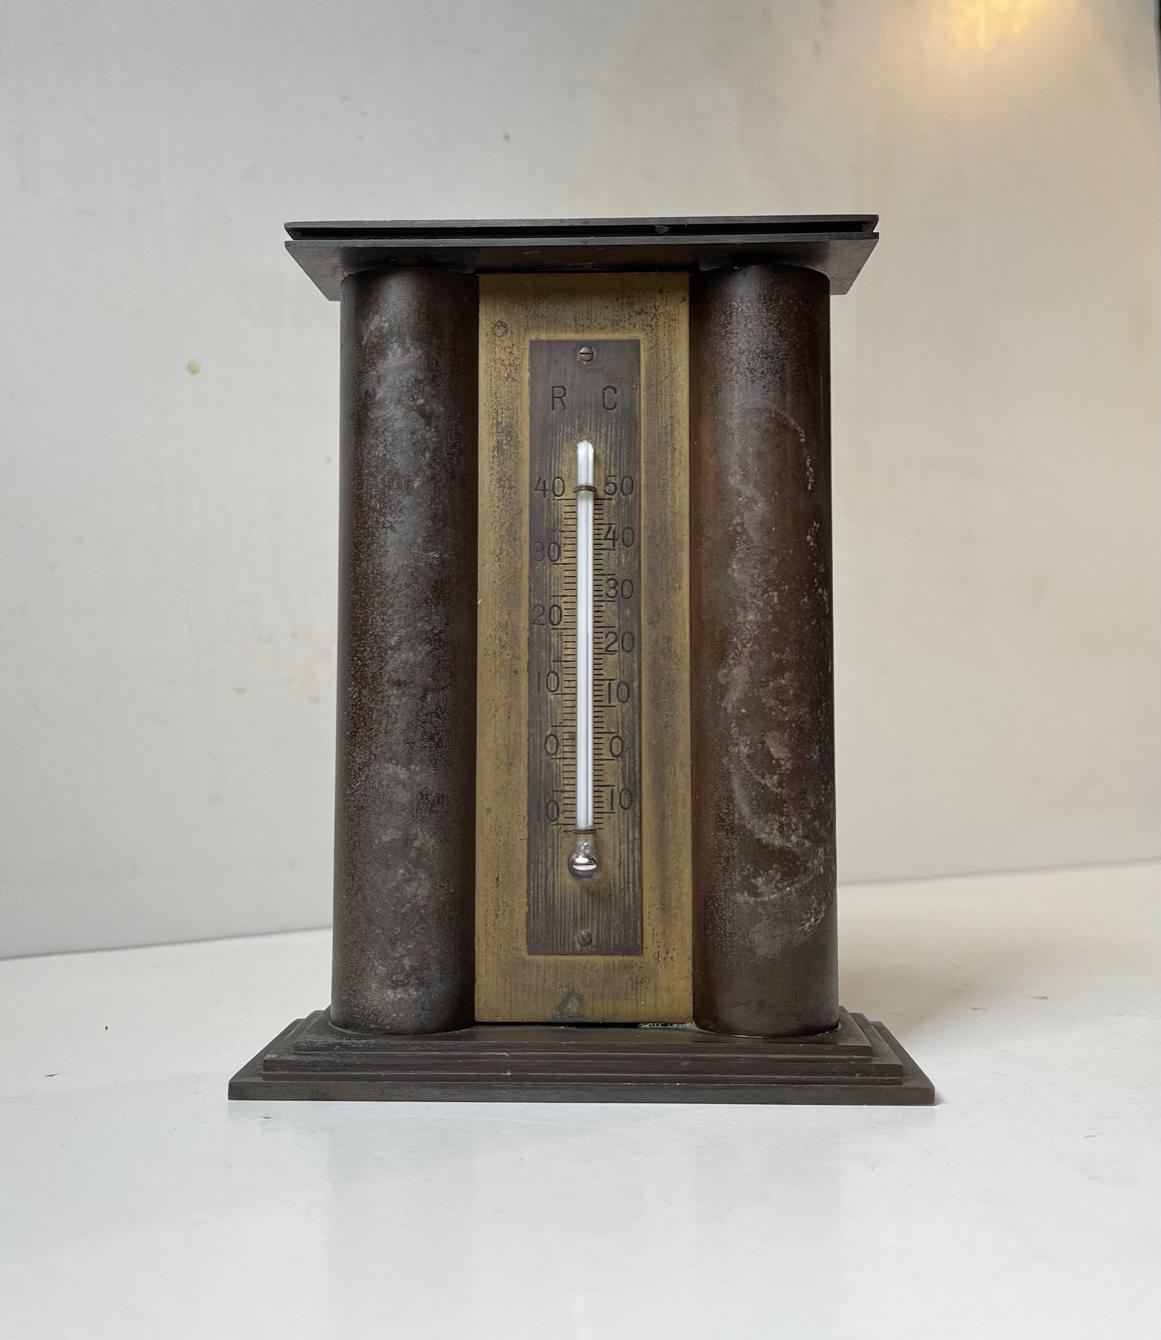 Architektonische, stilisierte Spardose und Thermometer aus Bronze im Art déco-Stil. Es stellt den Eingang der dänischen Versicherungsgesellschaft Baltica dar. Dieser Artikel wurde von dem dänischen Architekten C. Glahn in den 1930er Jahren entworfen